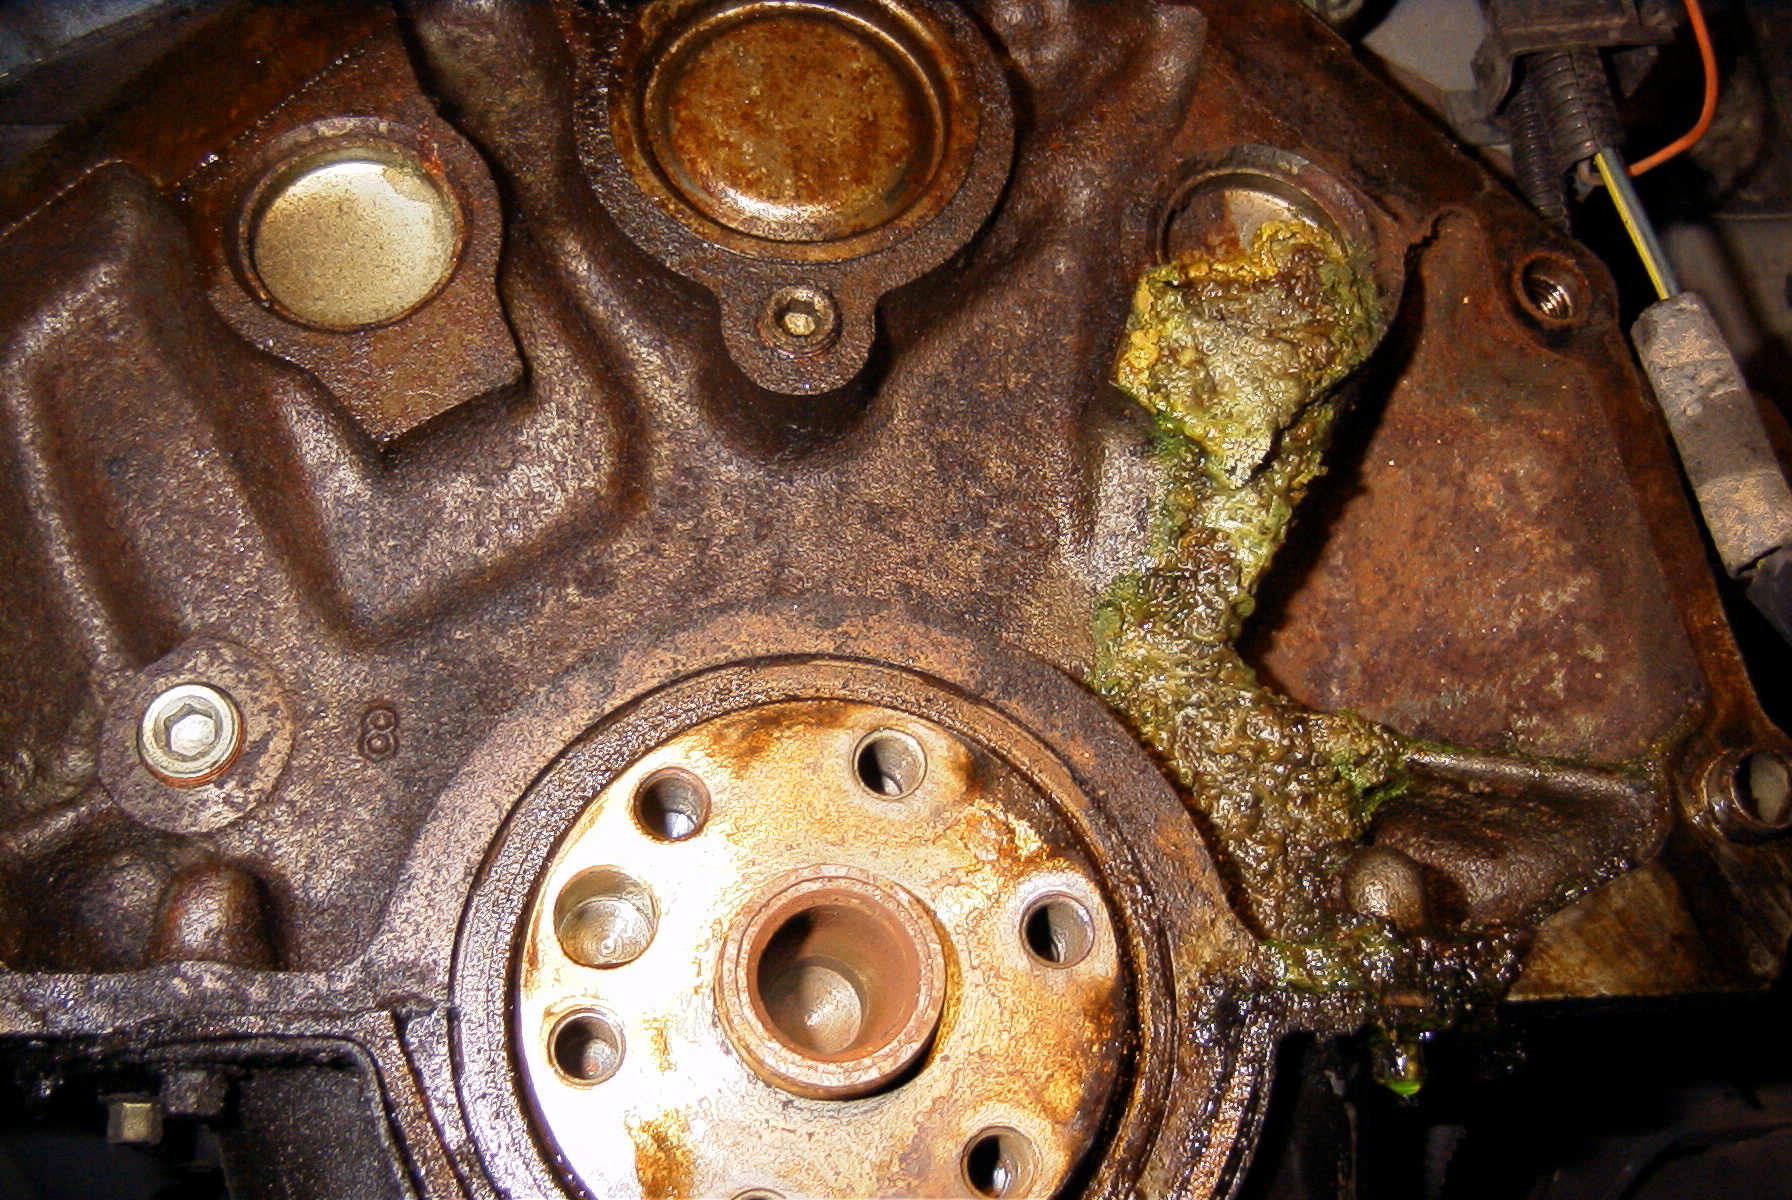 1997 Ford taurus radiator drain plug